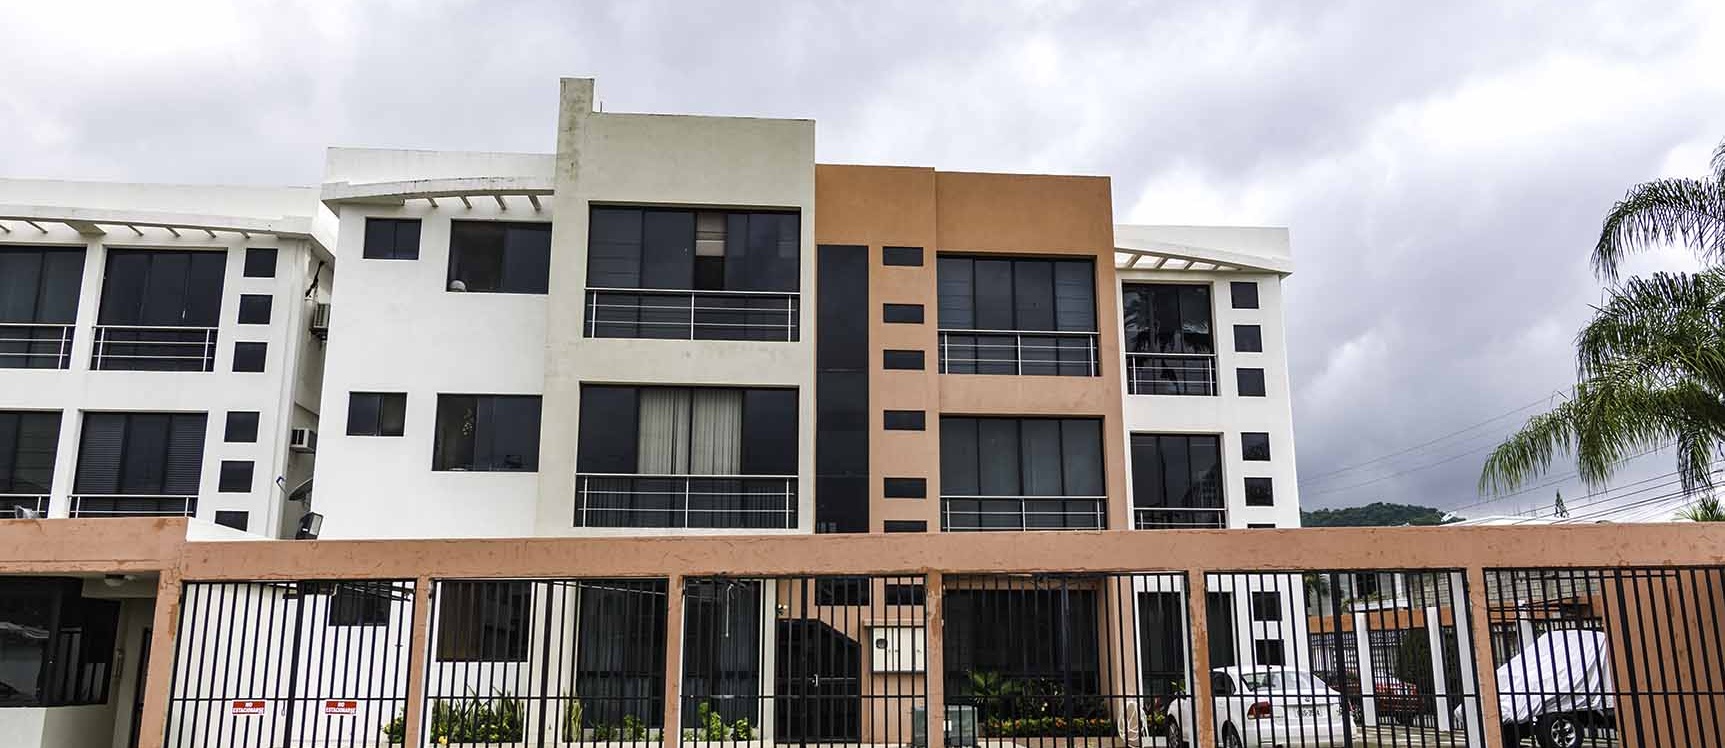 GeoBienes - Departamento en alquiler Pórtico I , Puerto Azul ,Vía a la Costa,  - Plusvalia Guayaquil Casas de venta y alquiler Inmobiliaria Ecuador